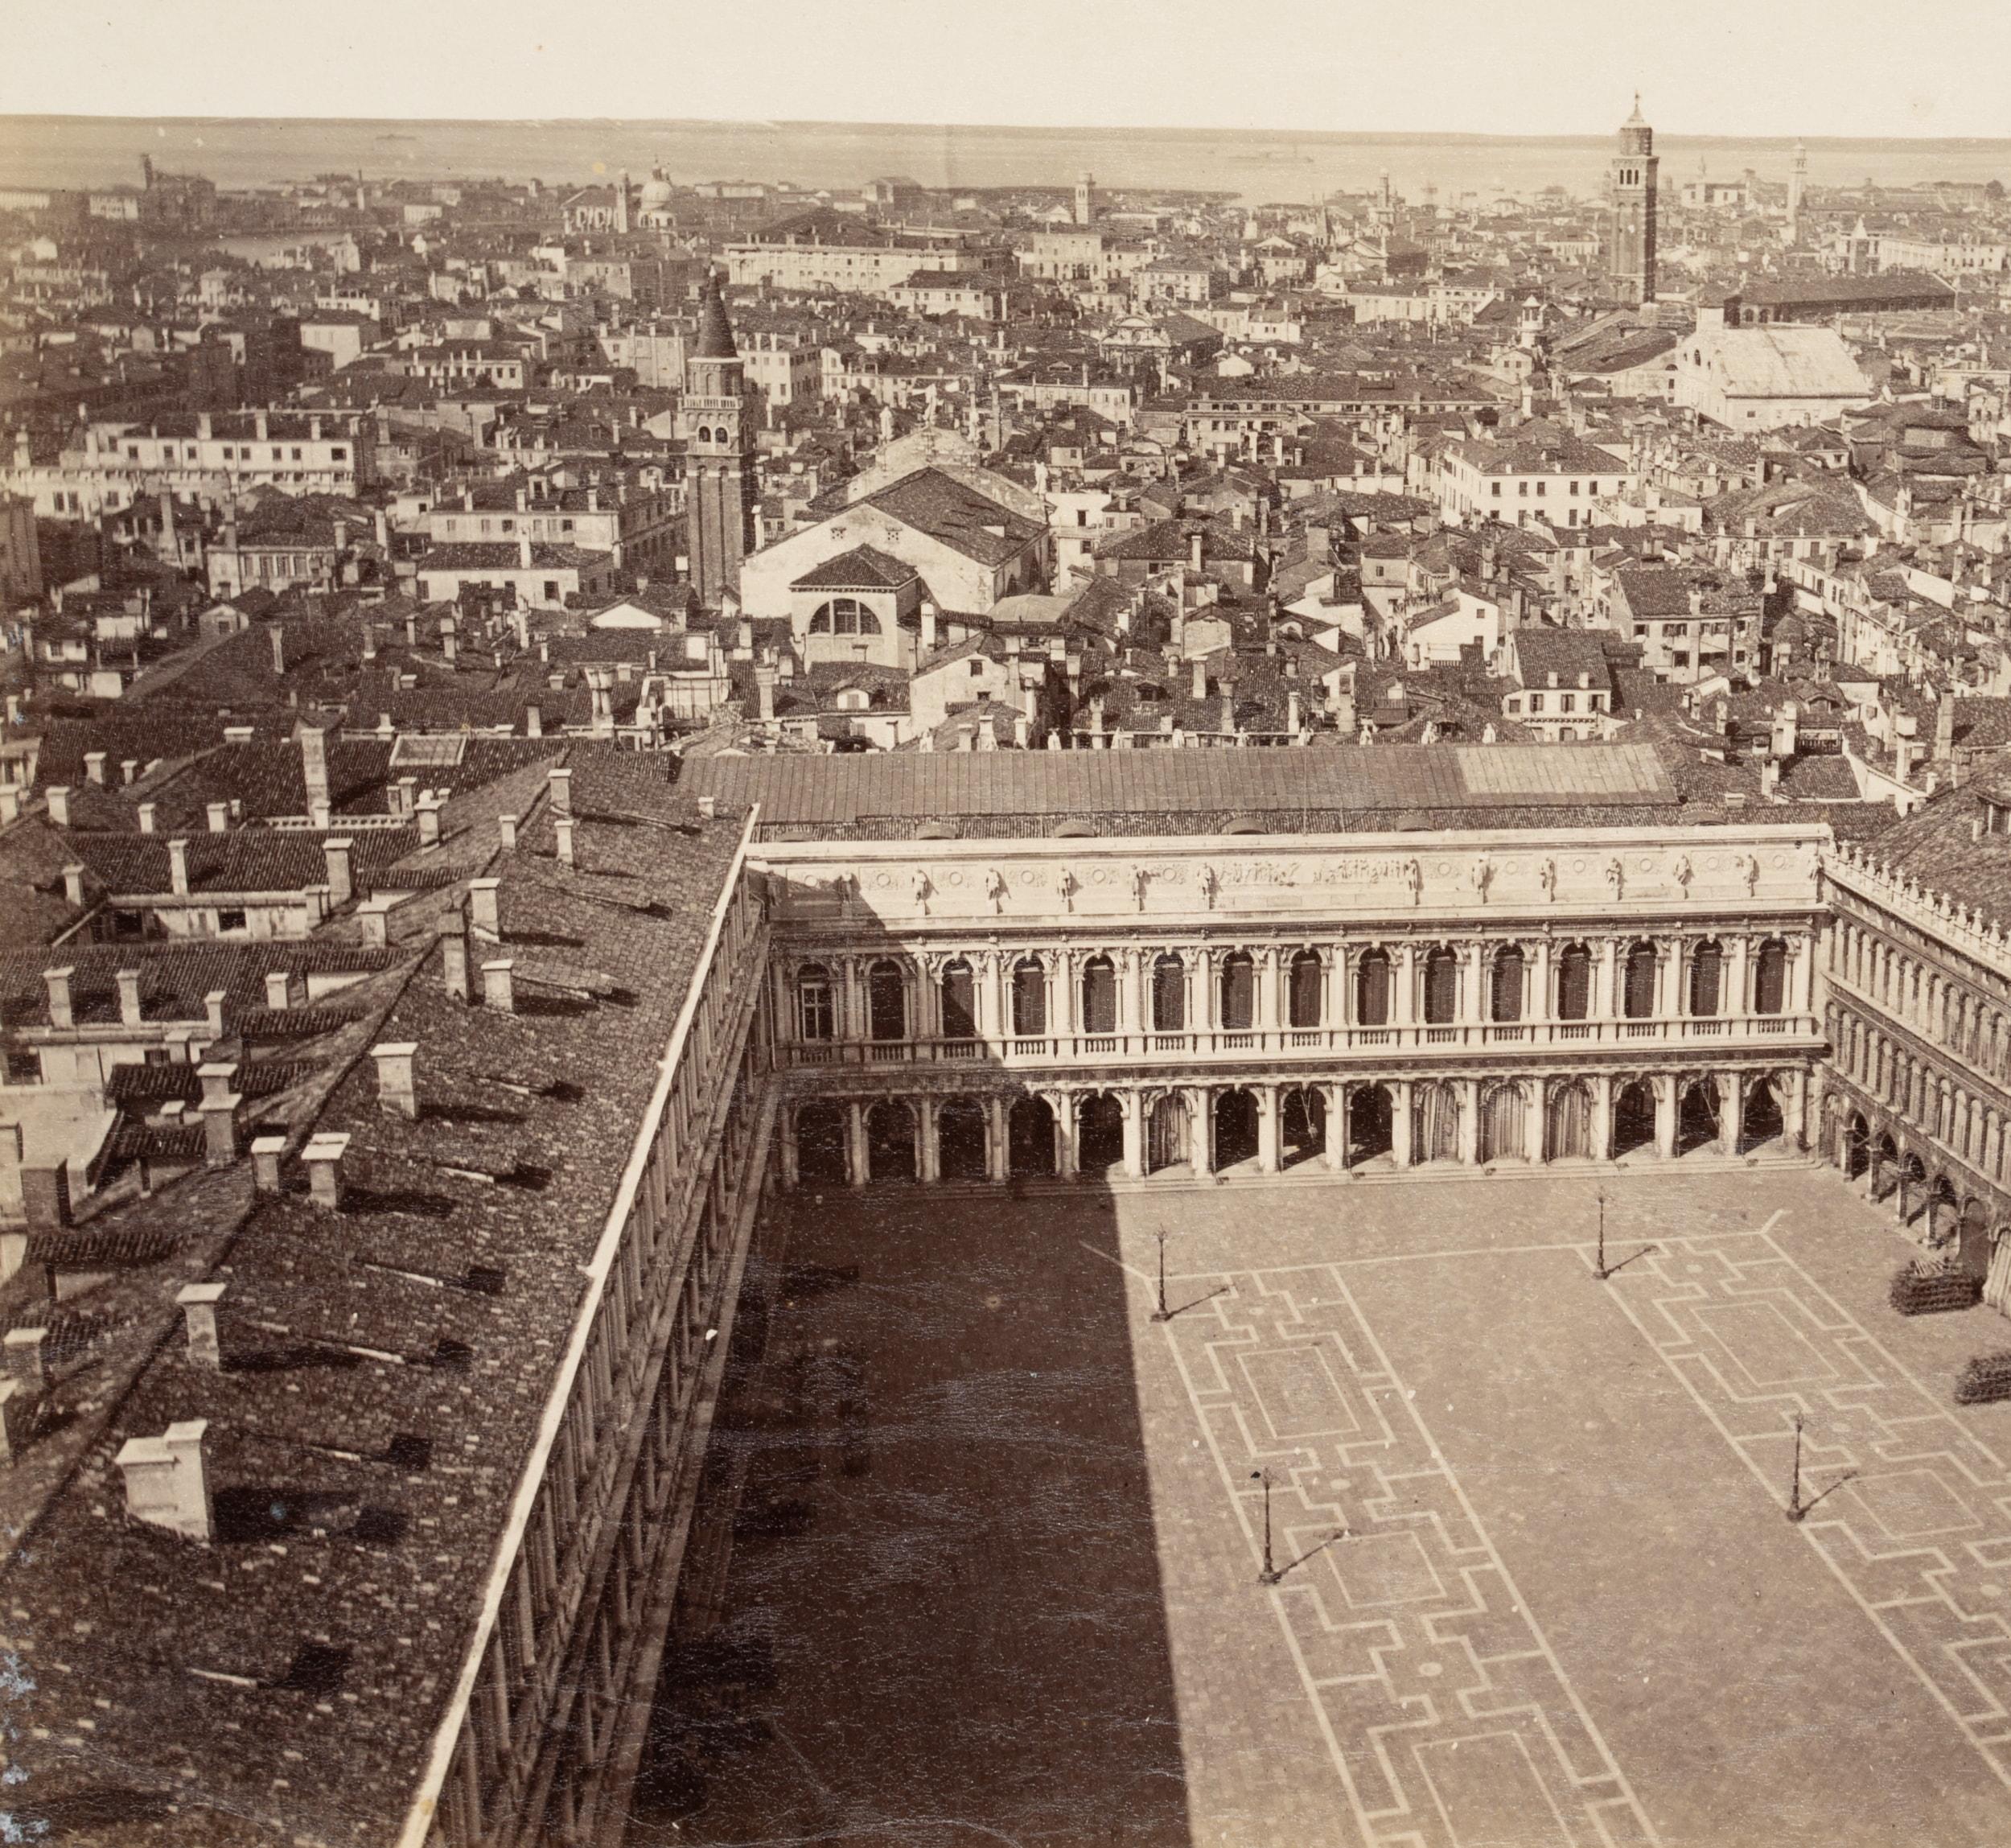 Venise vue du clocher - Photograph de Carlo Naya